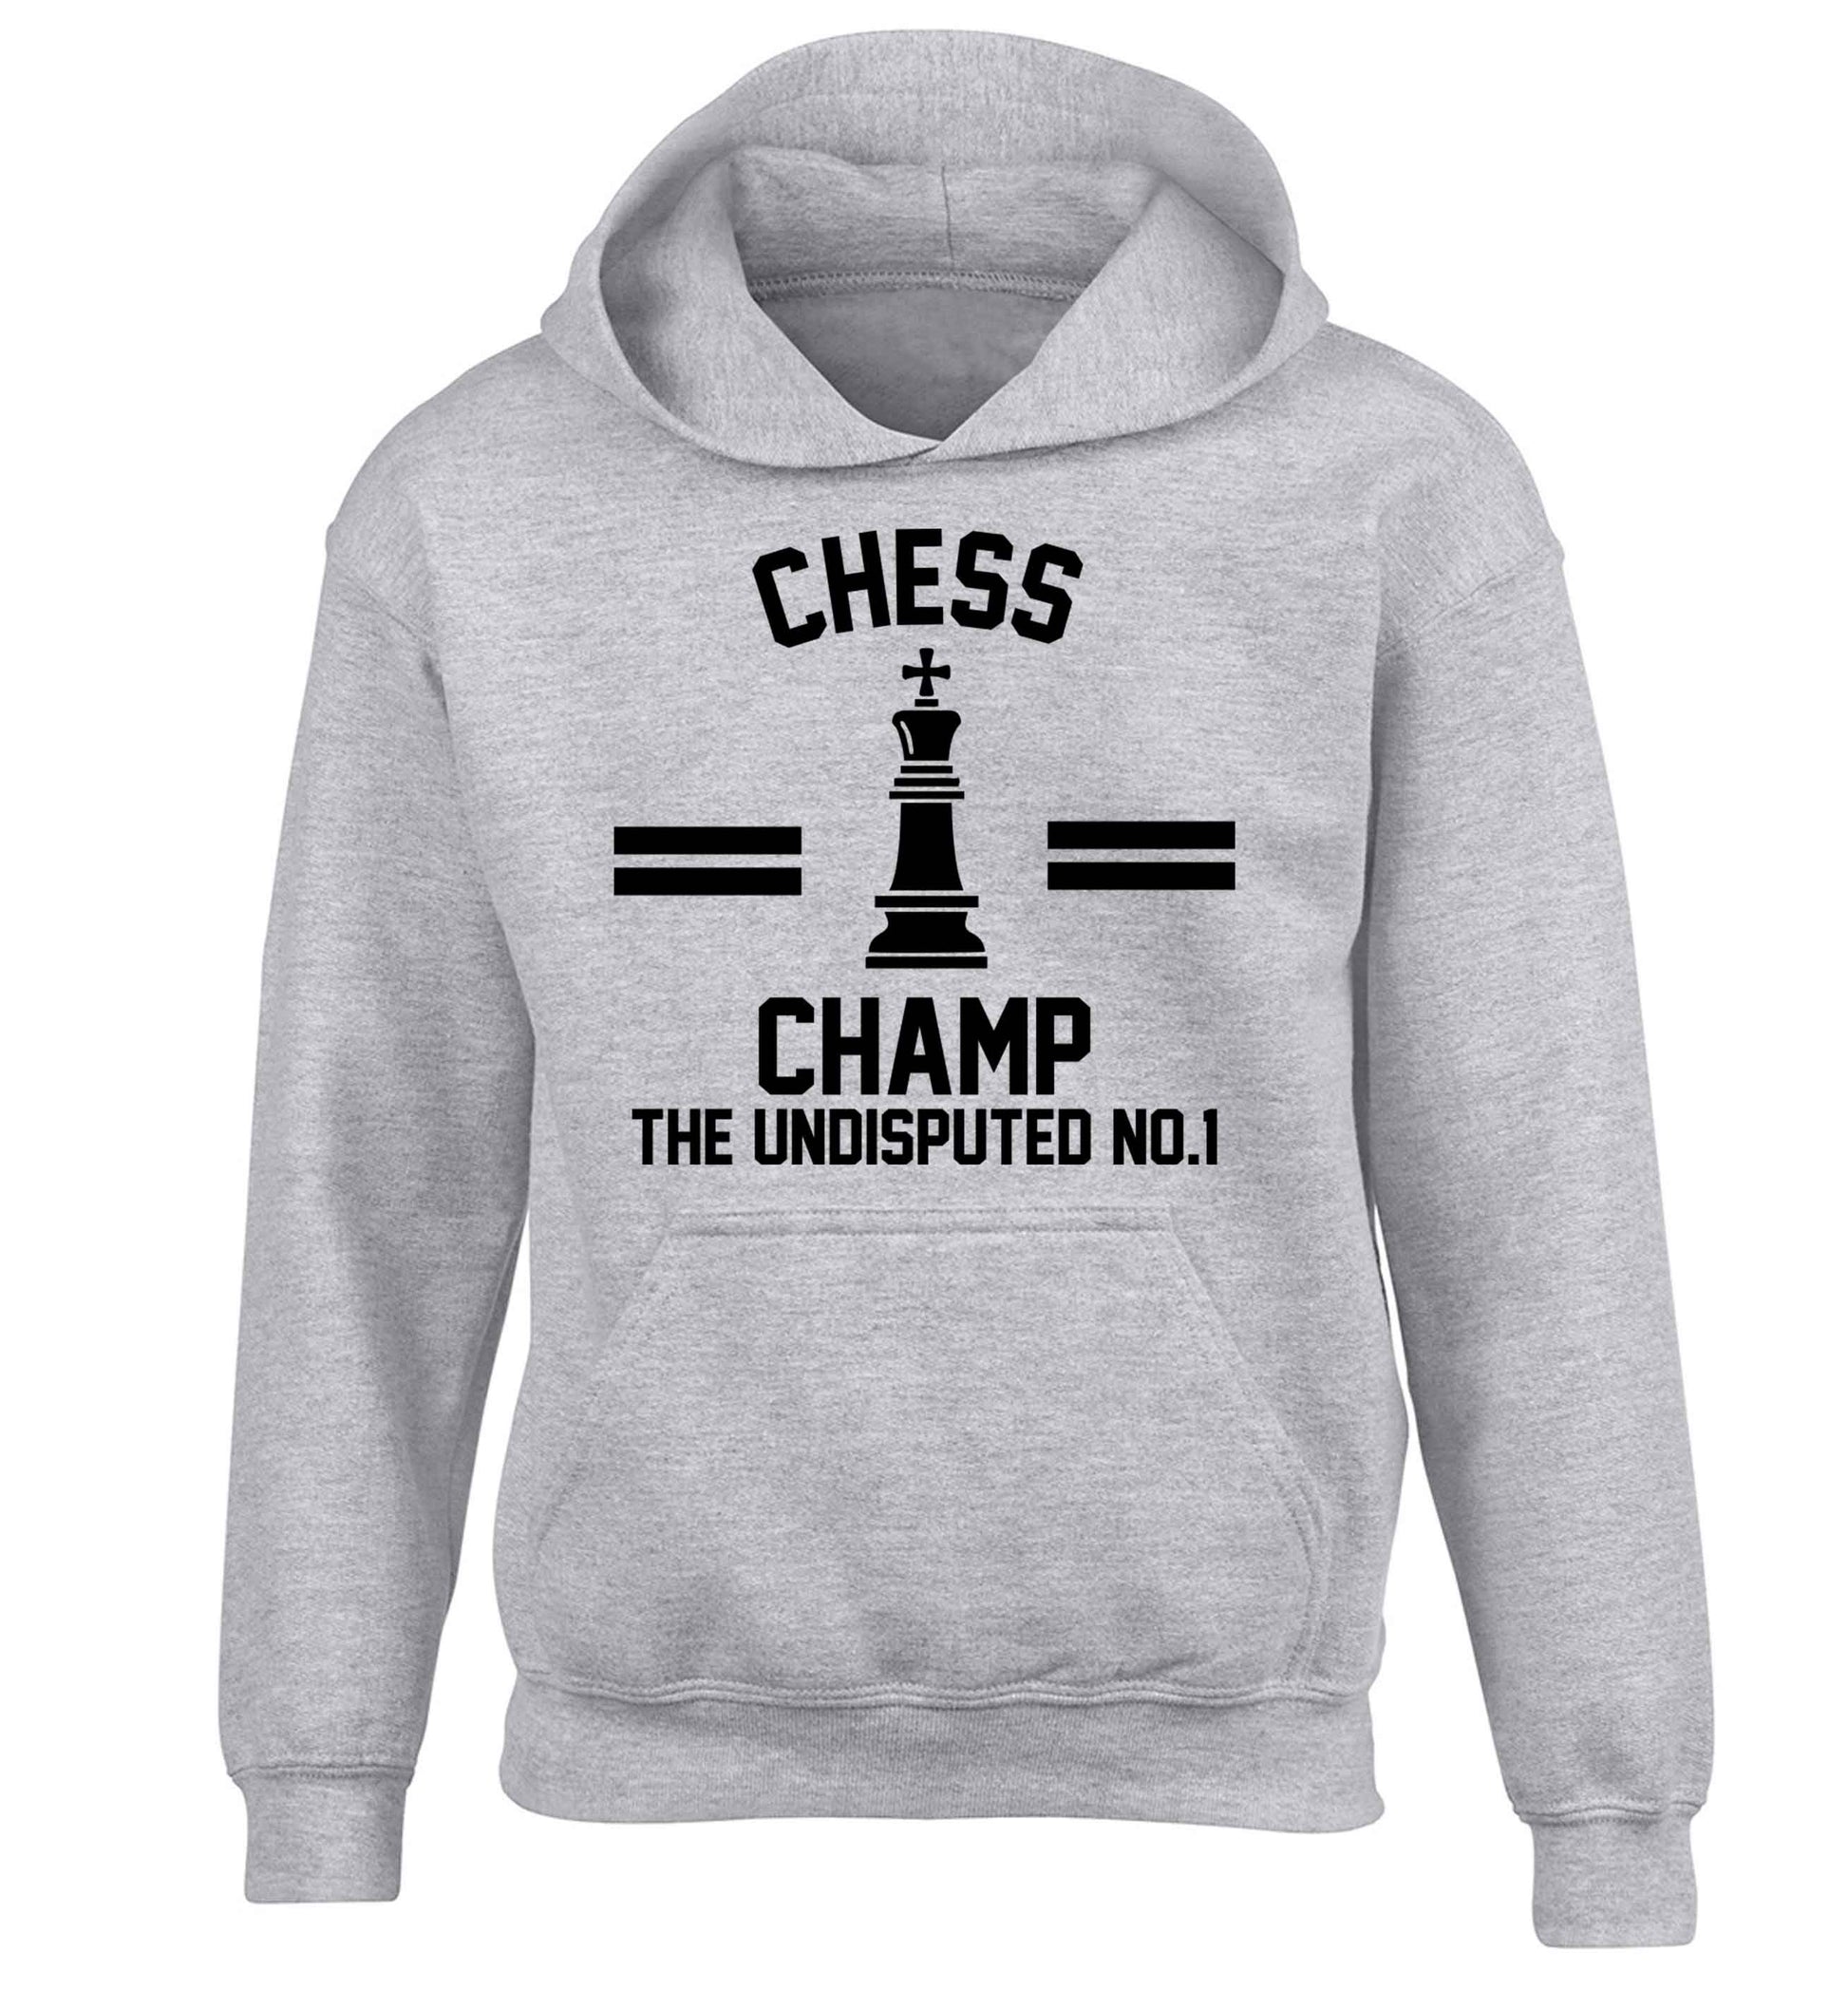 Undisputed chess championship no.1  children's grey hoodie 12-13 Years